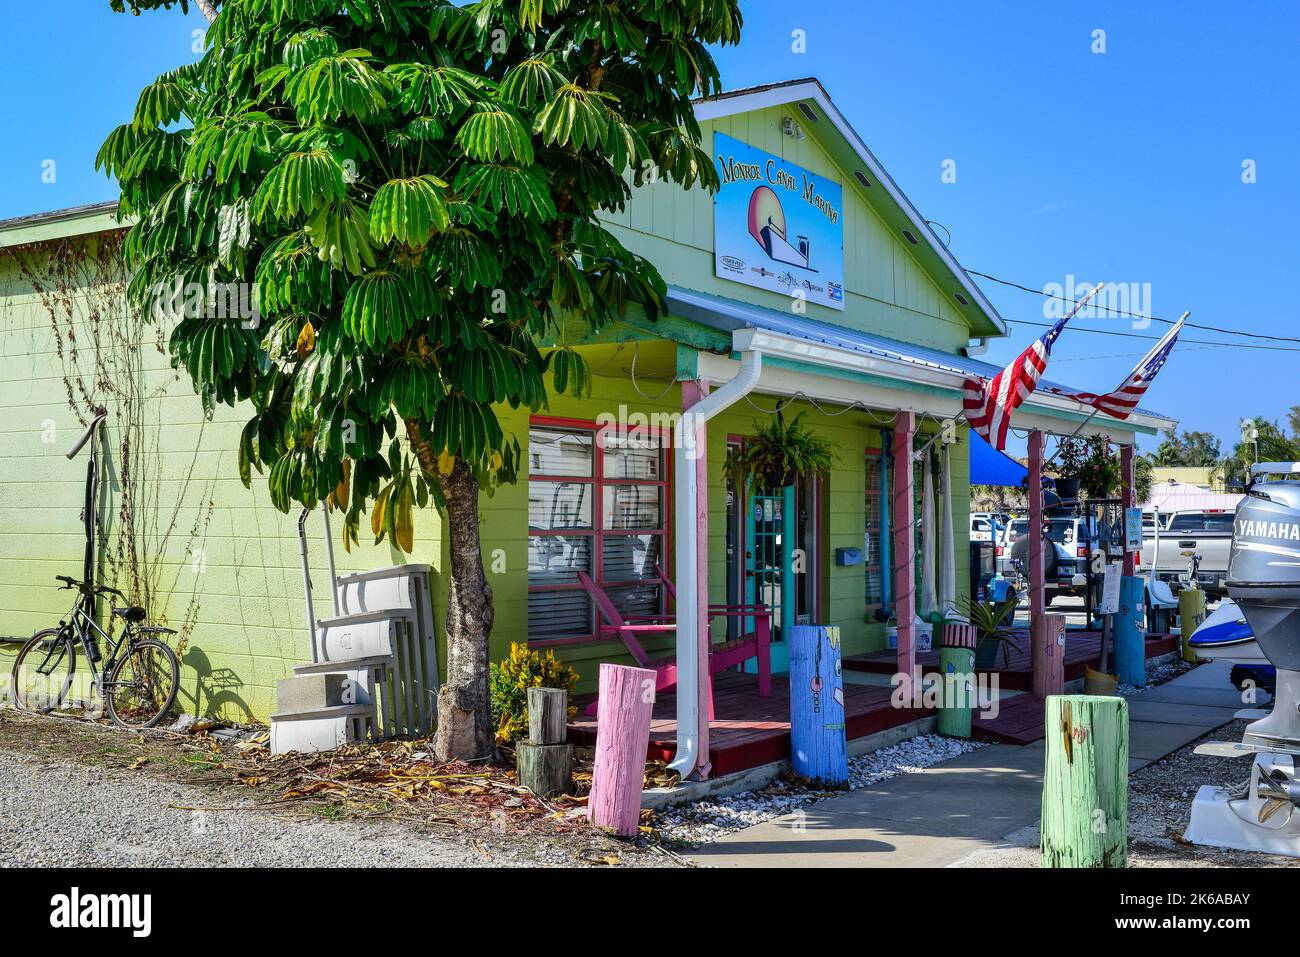 Una vecchia casa funky e colorata è sede del porto turistico di Monroe Canal, noleggio e riparazione barche a St James City, Florida, a Pine Island prima dell'uragano Ian Foto Stock